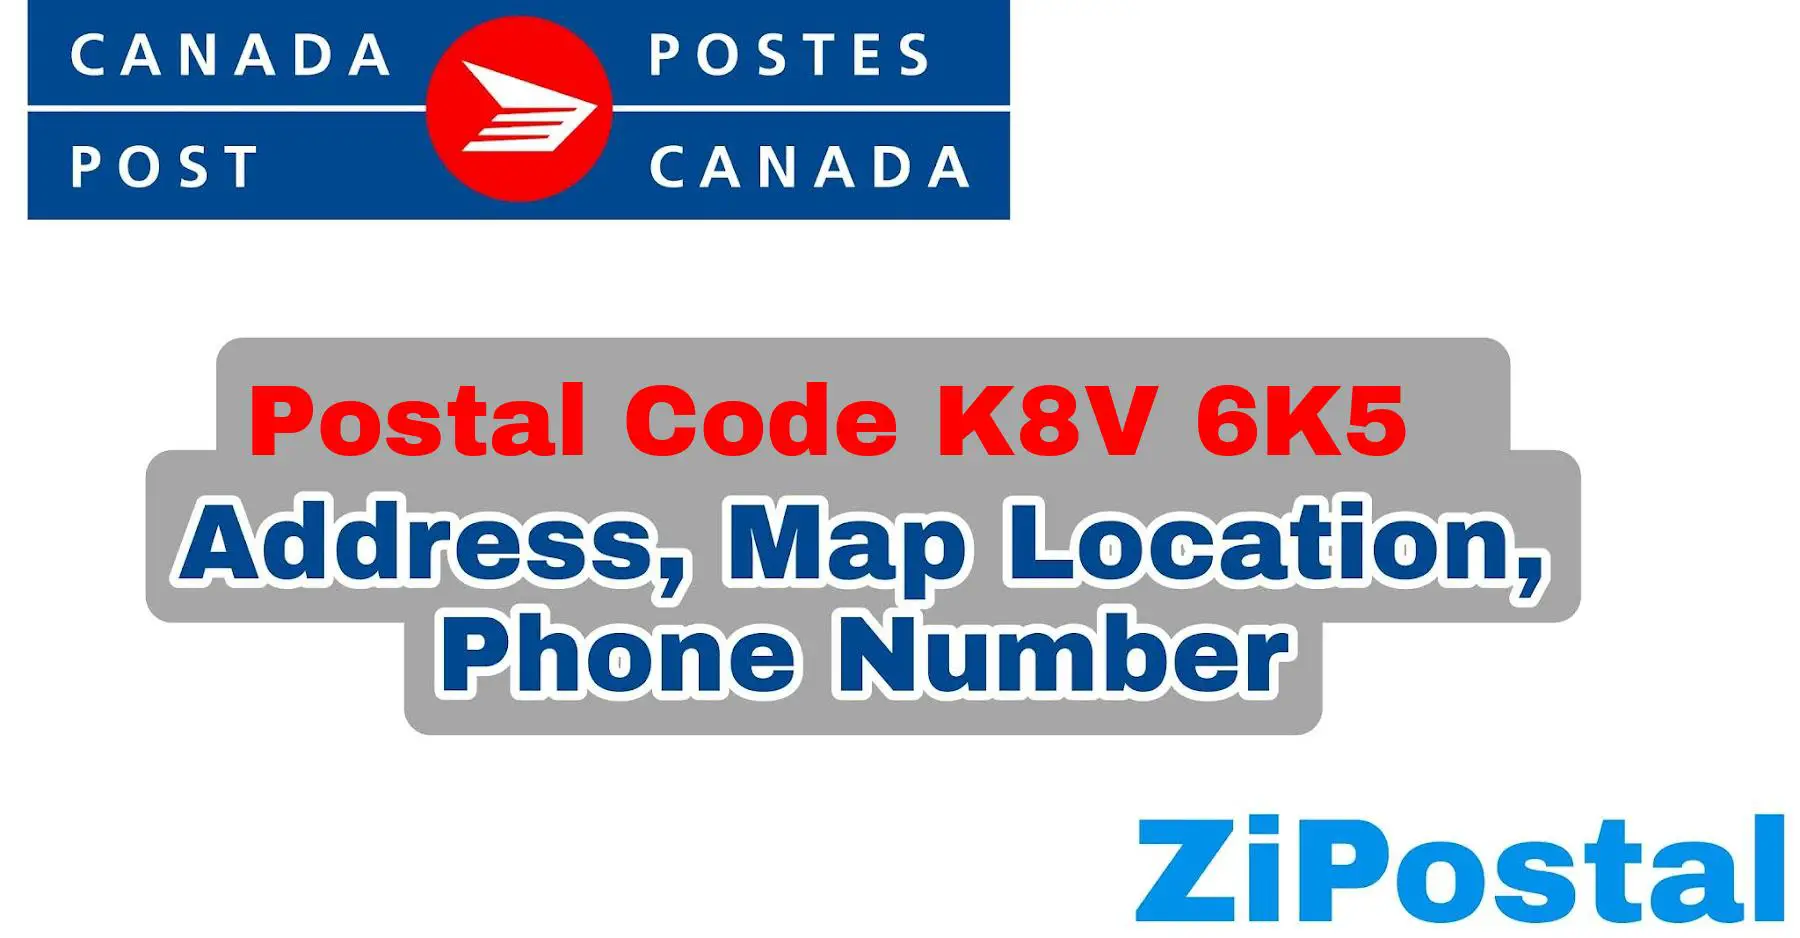 Postal Code K8V 6K5 Address Map Location and Phone Number